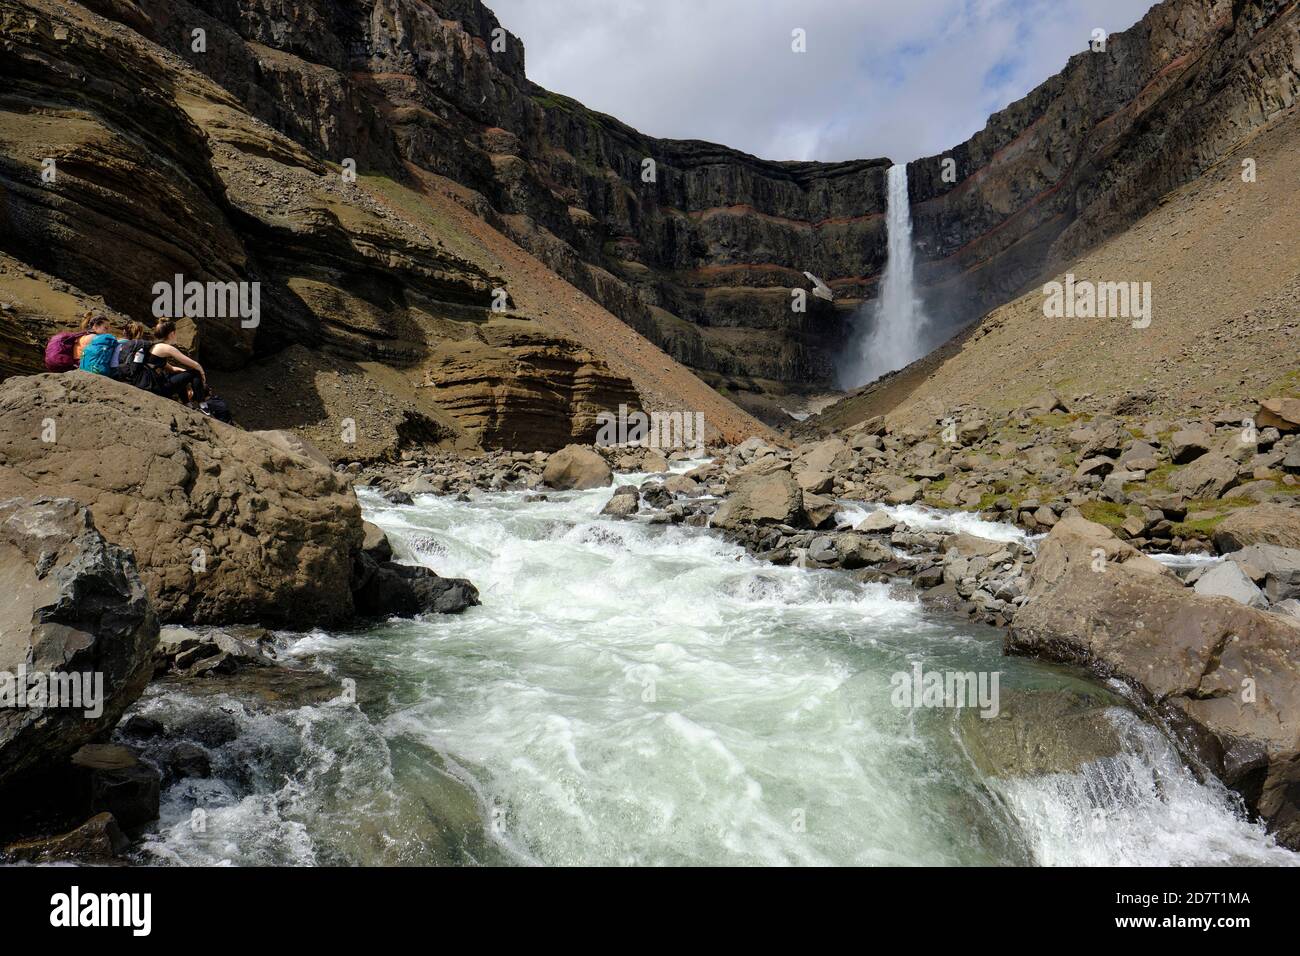 Randonneurs touristiques appréciant la chute d'eau Hengifoss et la rivière Hengifossa à l' Le paysage des hautes terres de Fljótsdalshreppur est de l'Islande Banque D'Images